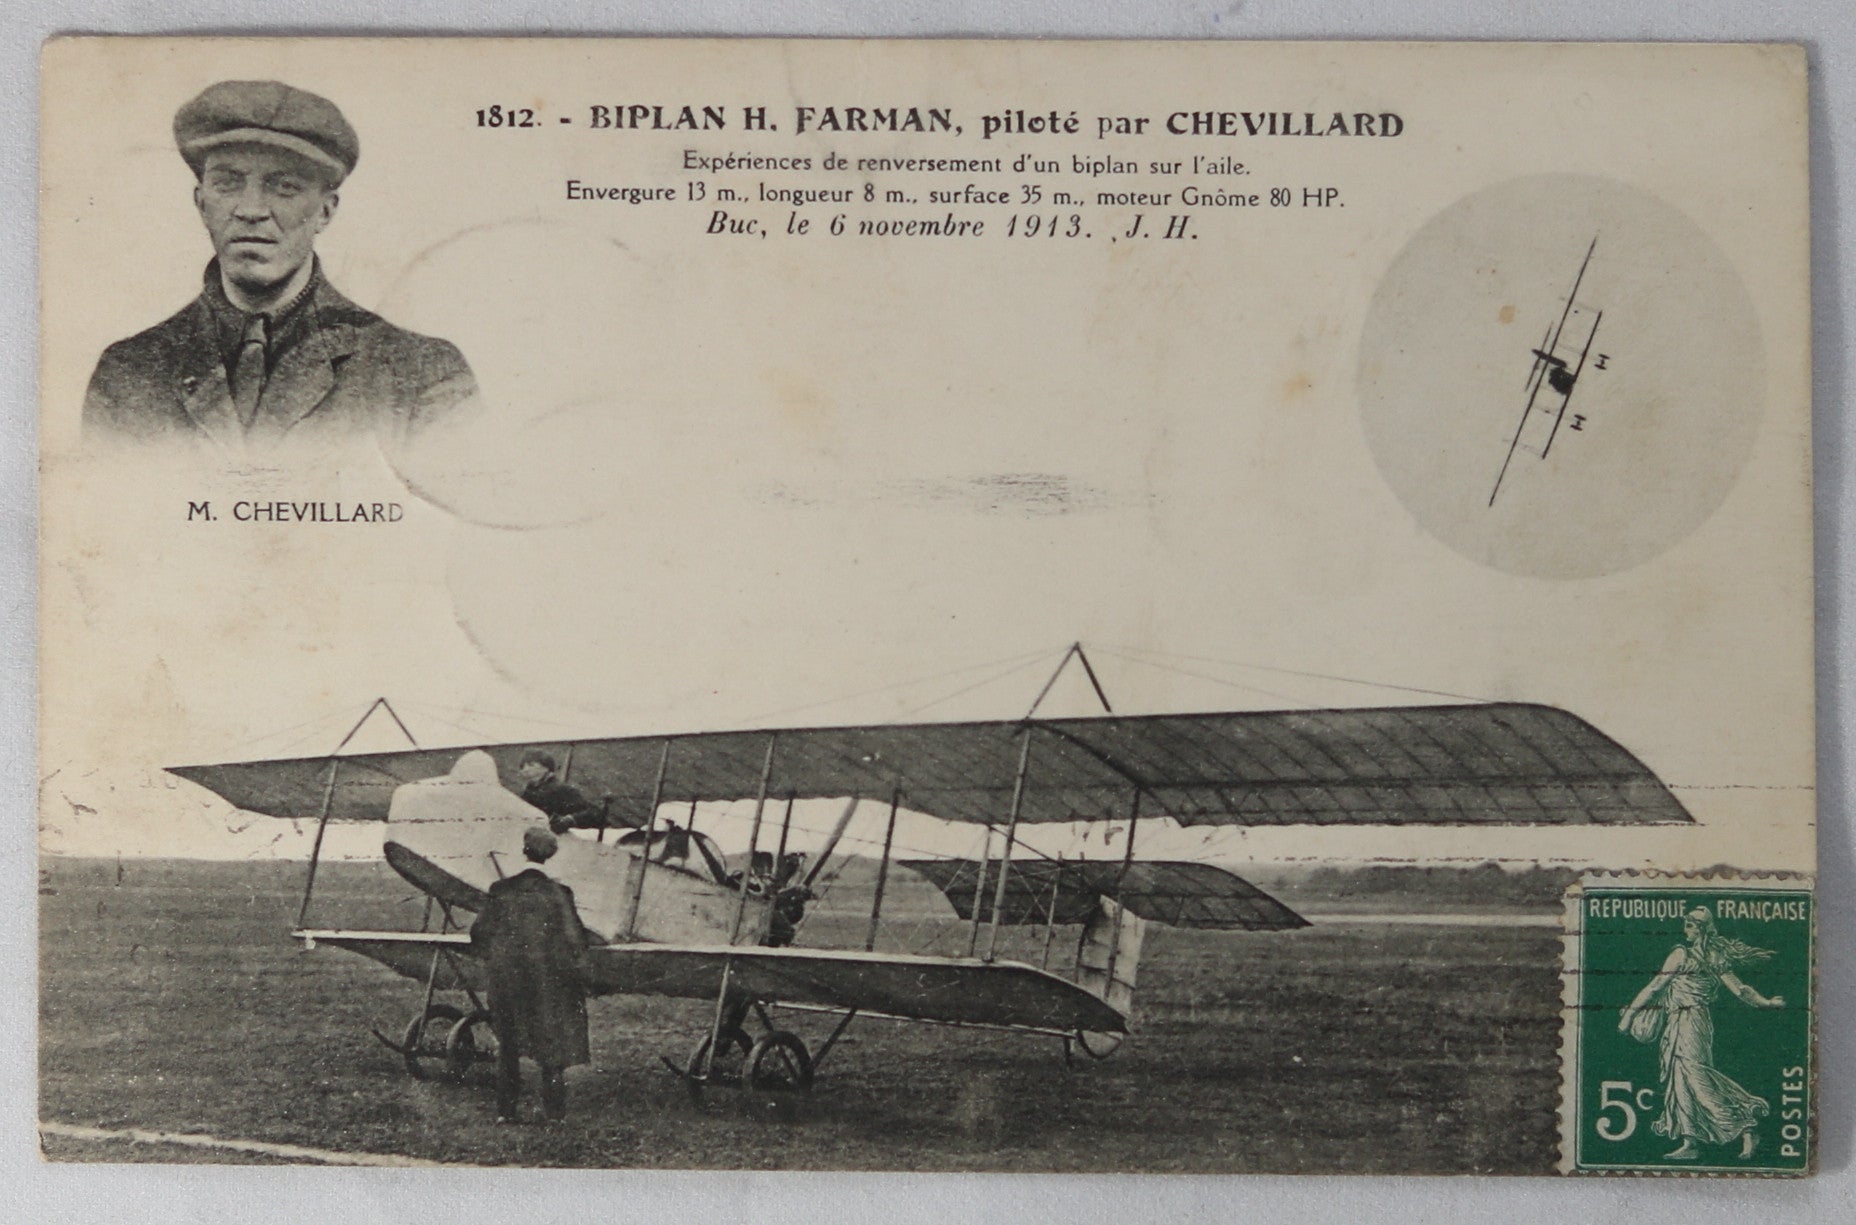 CPA avec photo de Chevillard dans son biplane FARMAN 1913